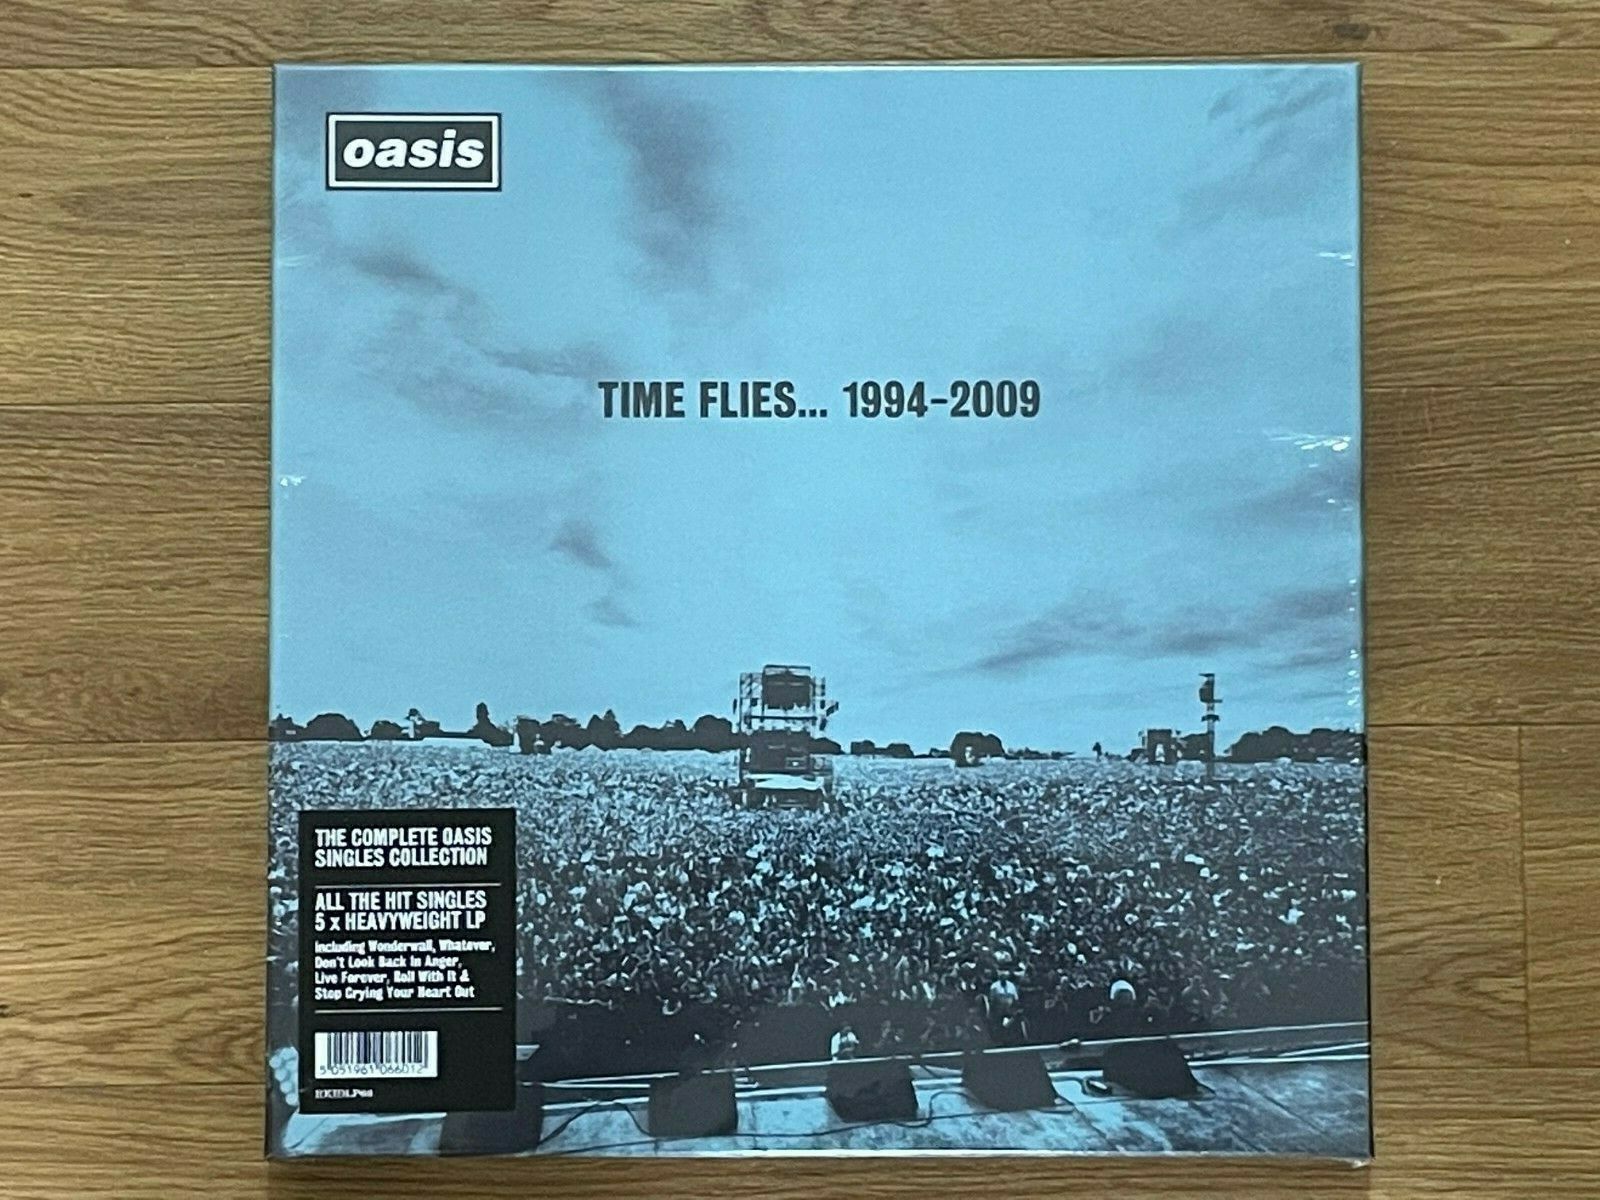 レコードoasis uk original盤! time flies...廃盤boxlp本・音楽